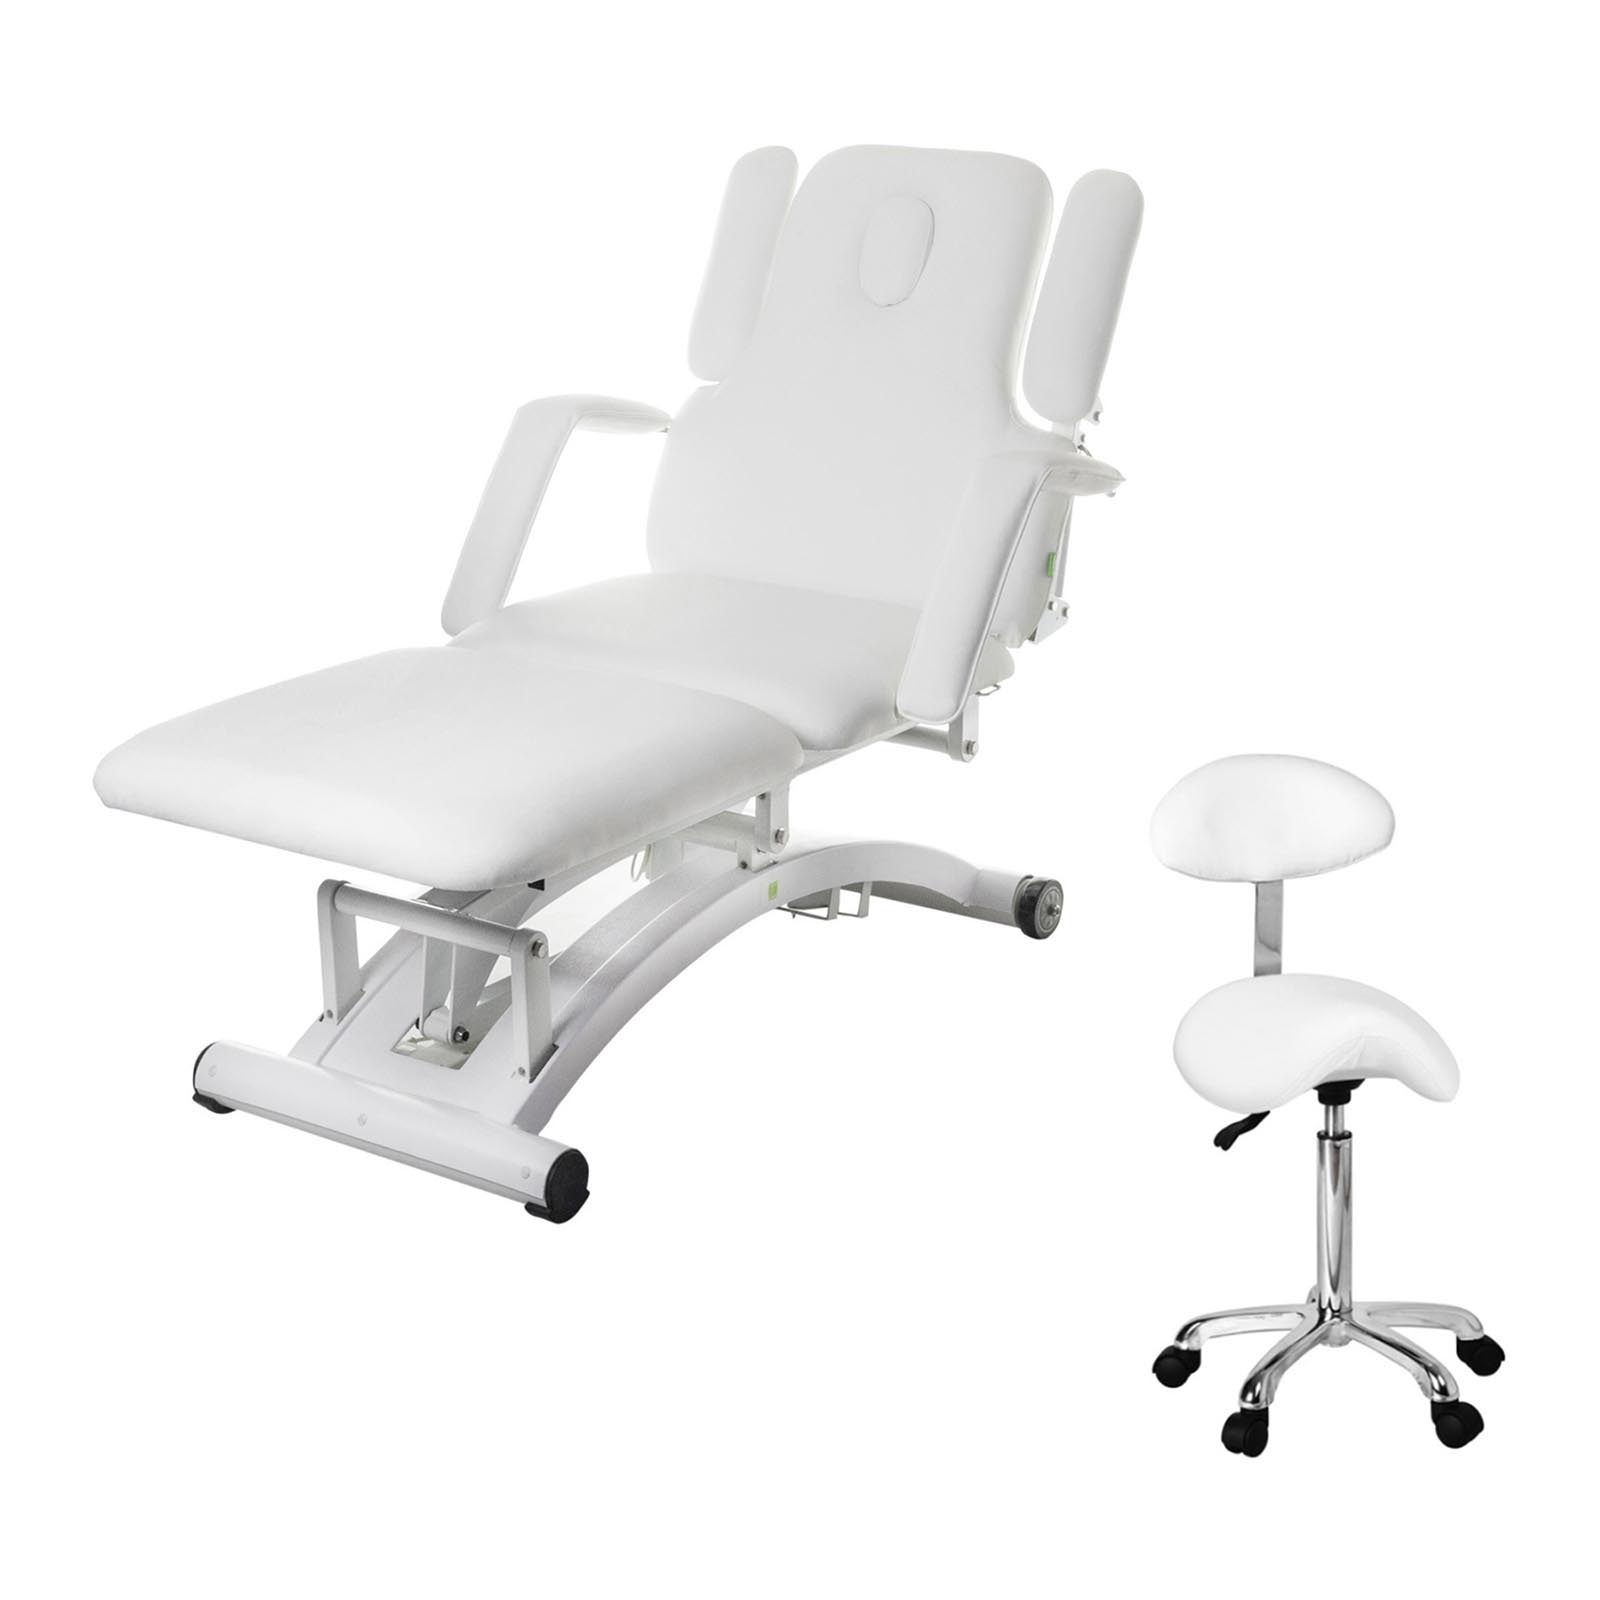 Table de massage électrique avec siège d’appui - 3 moteurs - Télécommande - Blanc